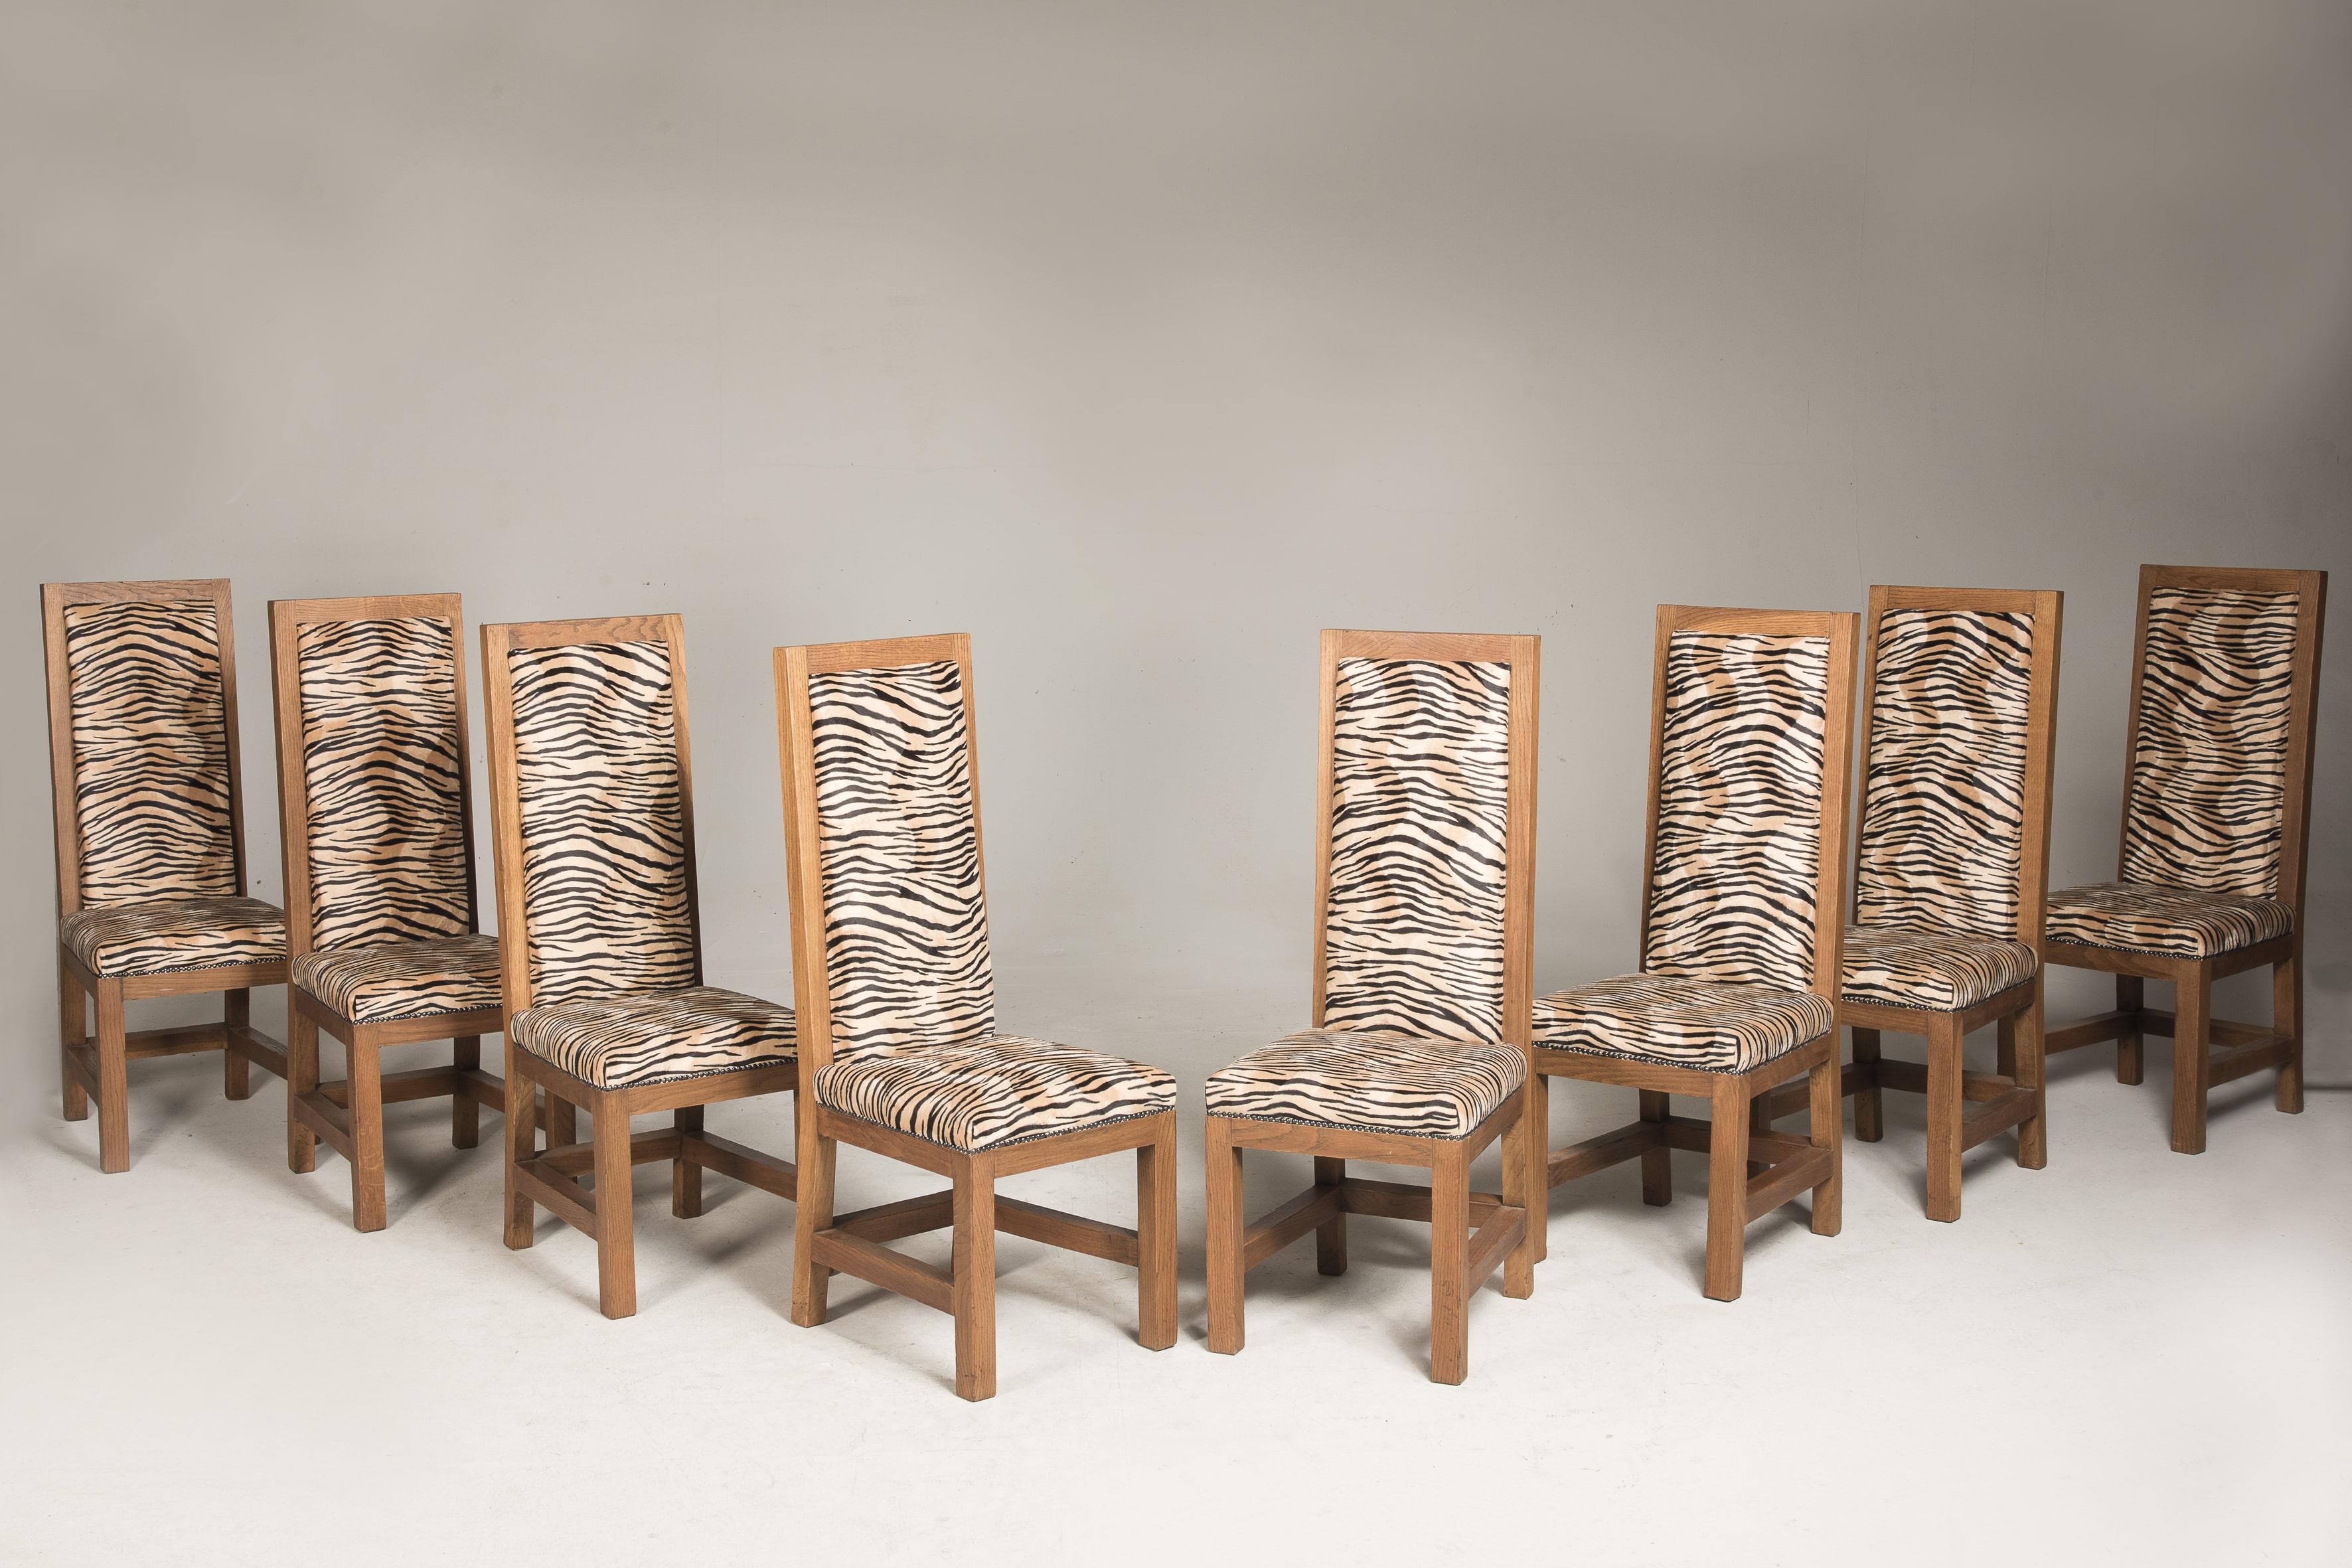 Ensemble de huit chaises Art Déco en chêne avec patine d'origine, finition à la cire, provenant de France.
Sellerie tigrée récente. 

